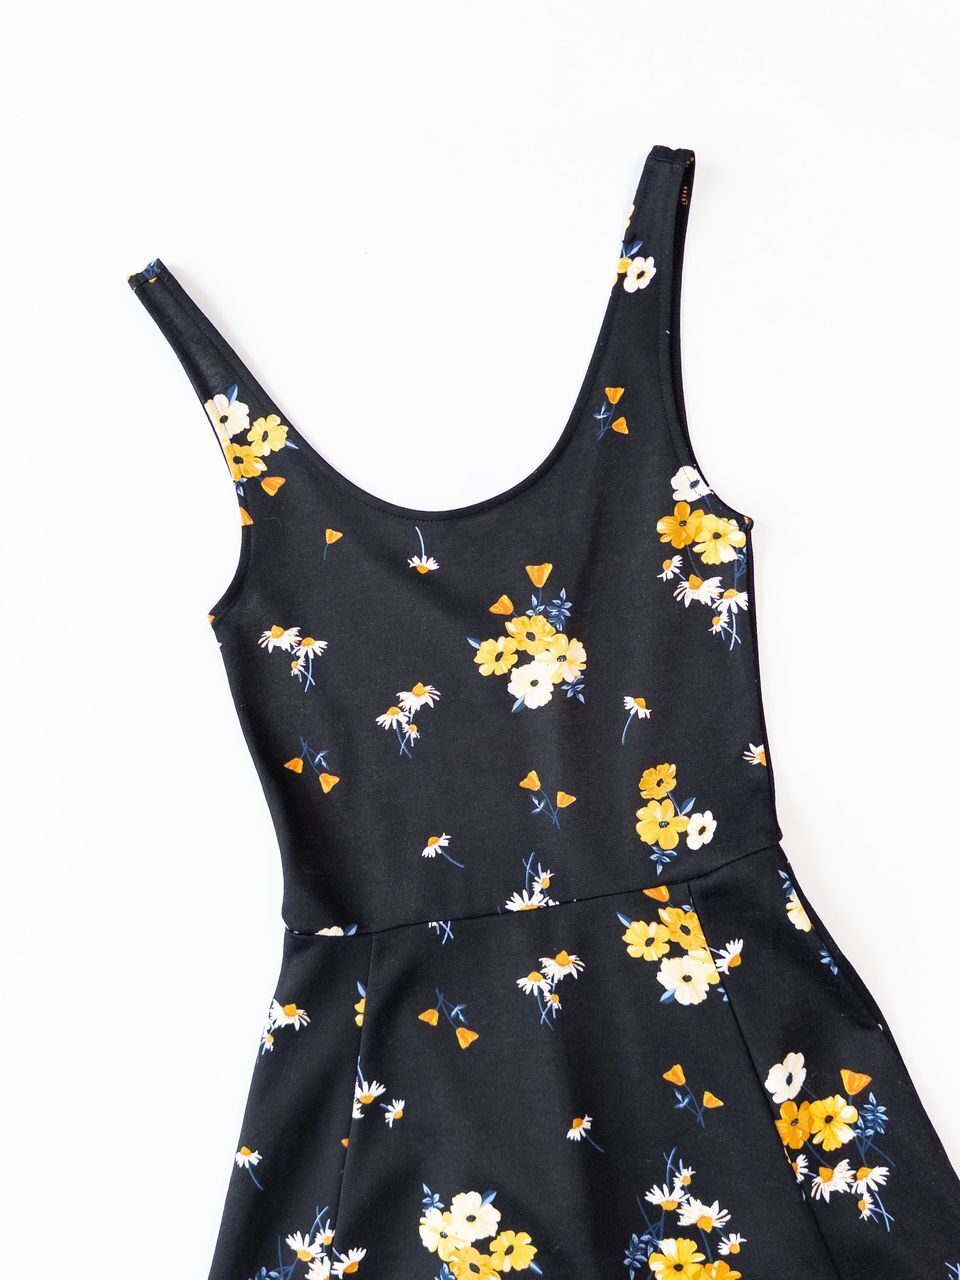 Короткое платье без рукавов из плотного трикотажа цвет черный/цветы размер ЕUR 34 (rus 40) H&M